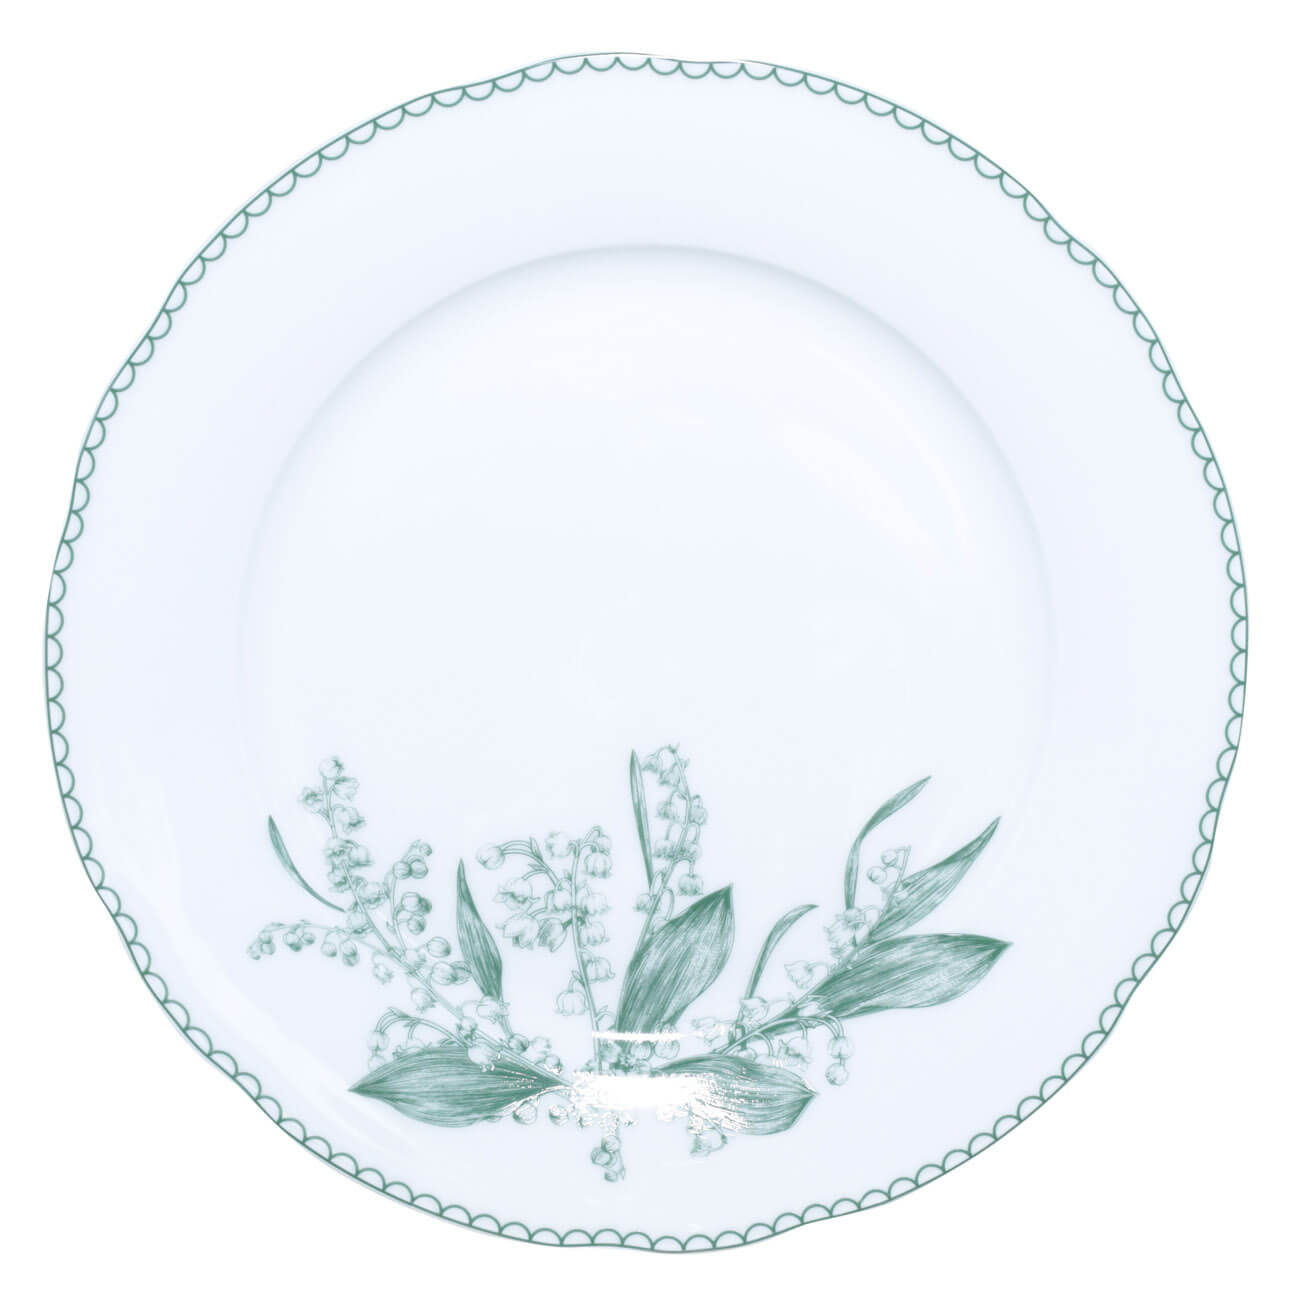 Тарелка обеденная, 27 см, фарфор F, белая, Весенние ландыши, May-lily тарелка керамическая обеденная 550 мл 20 см серая 1 сорт иран